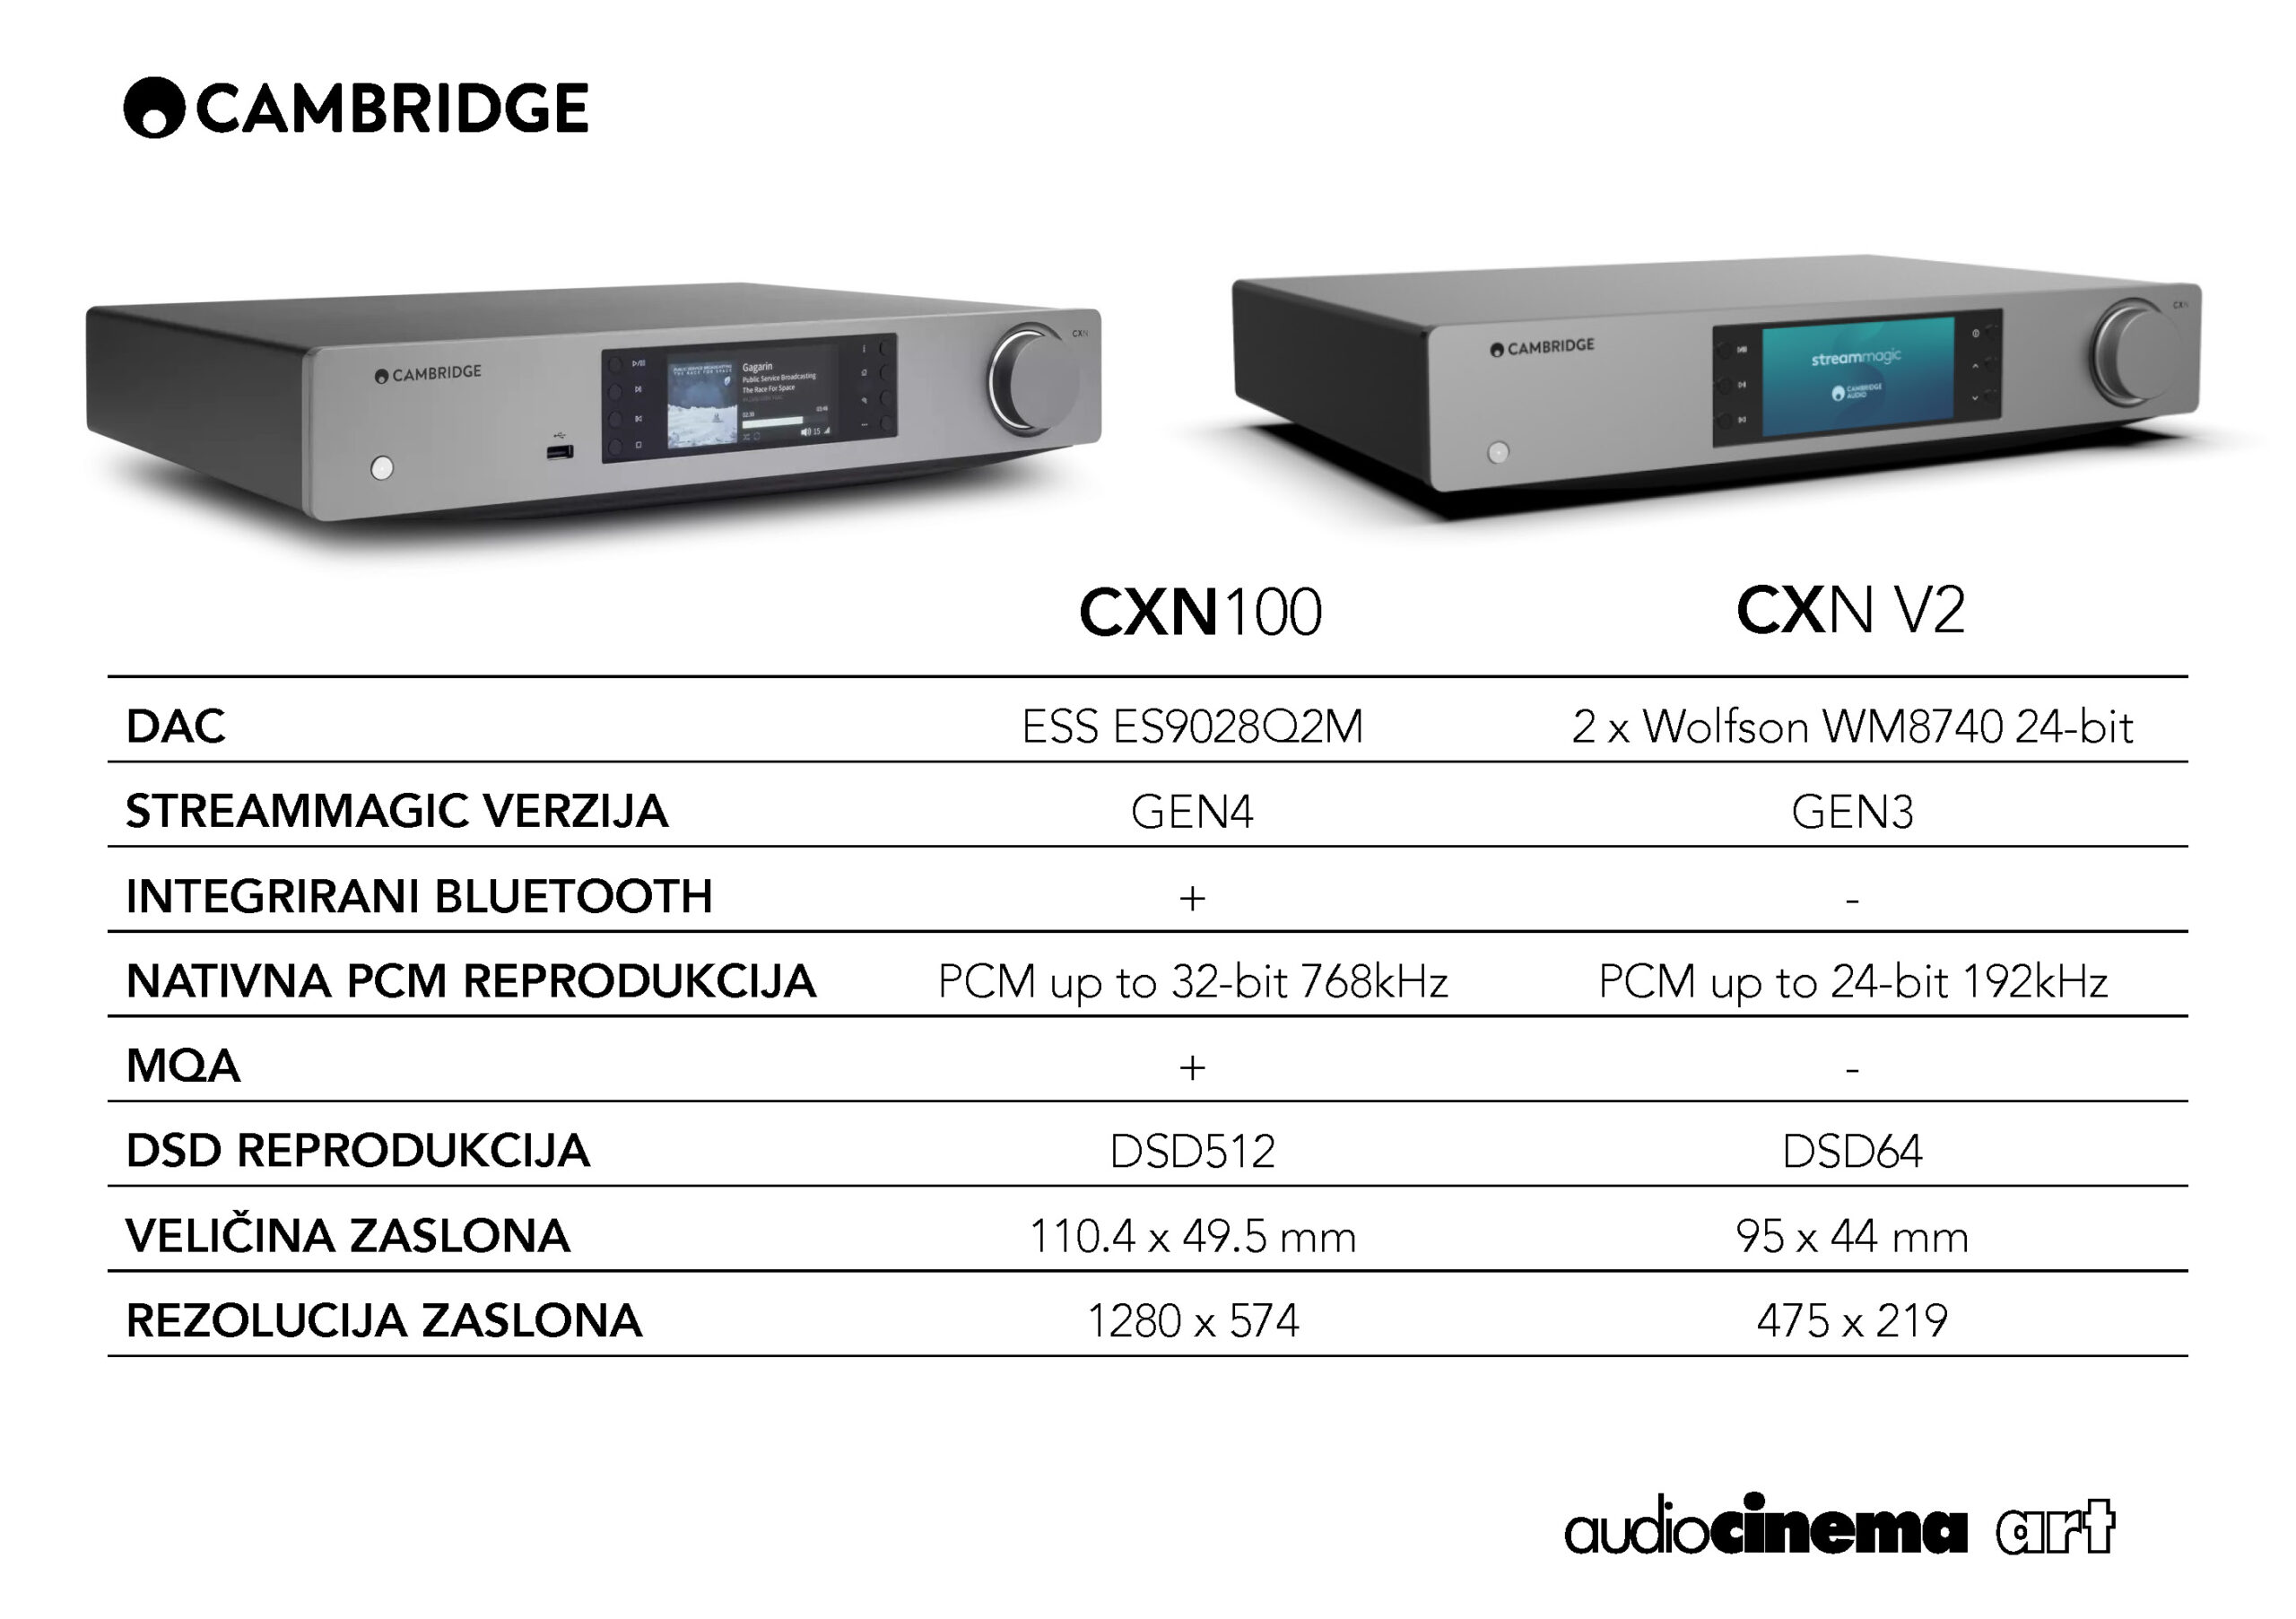 razlike CXN100 i CXN V2